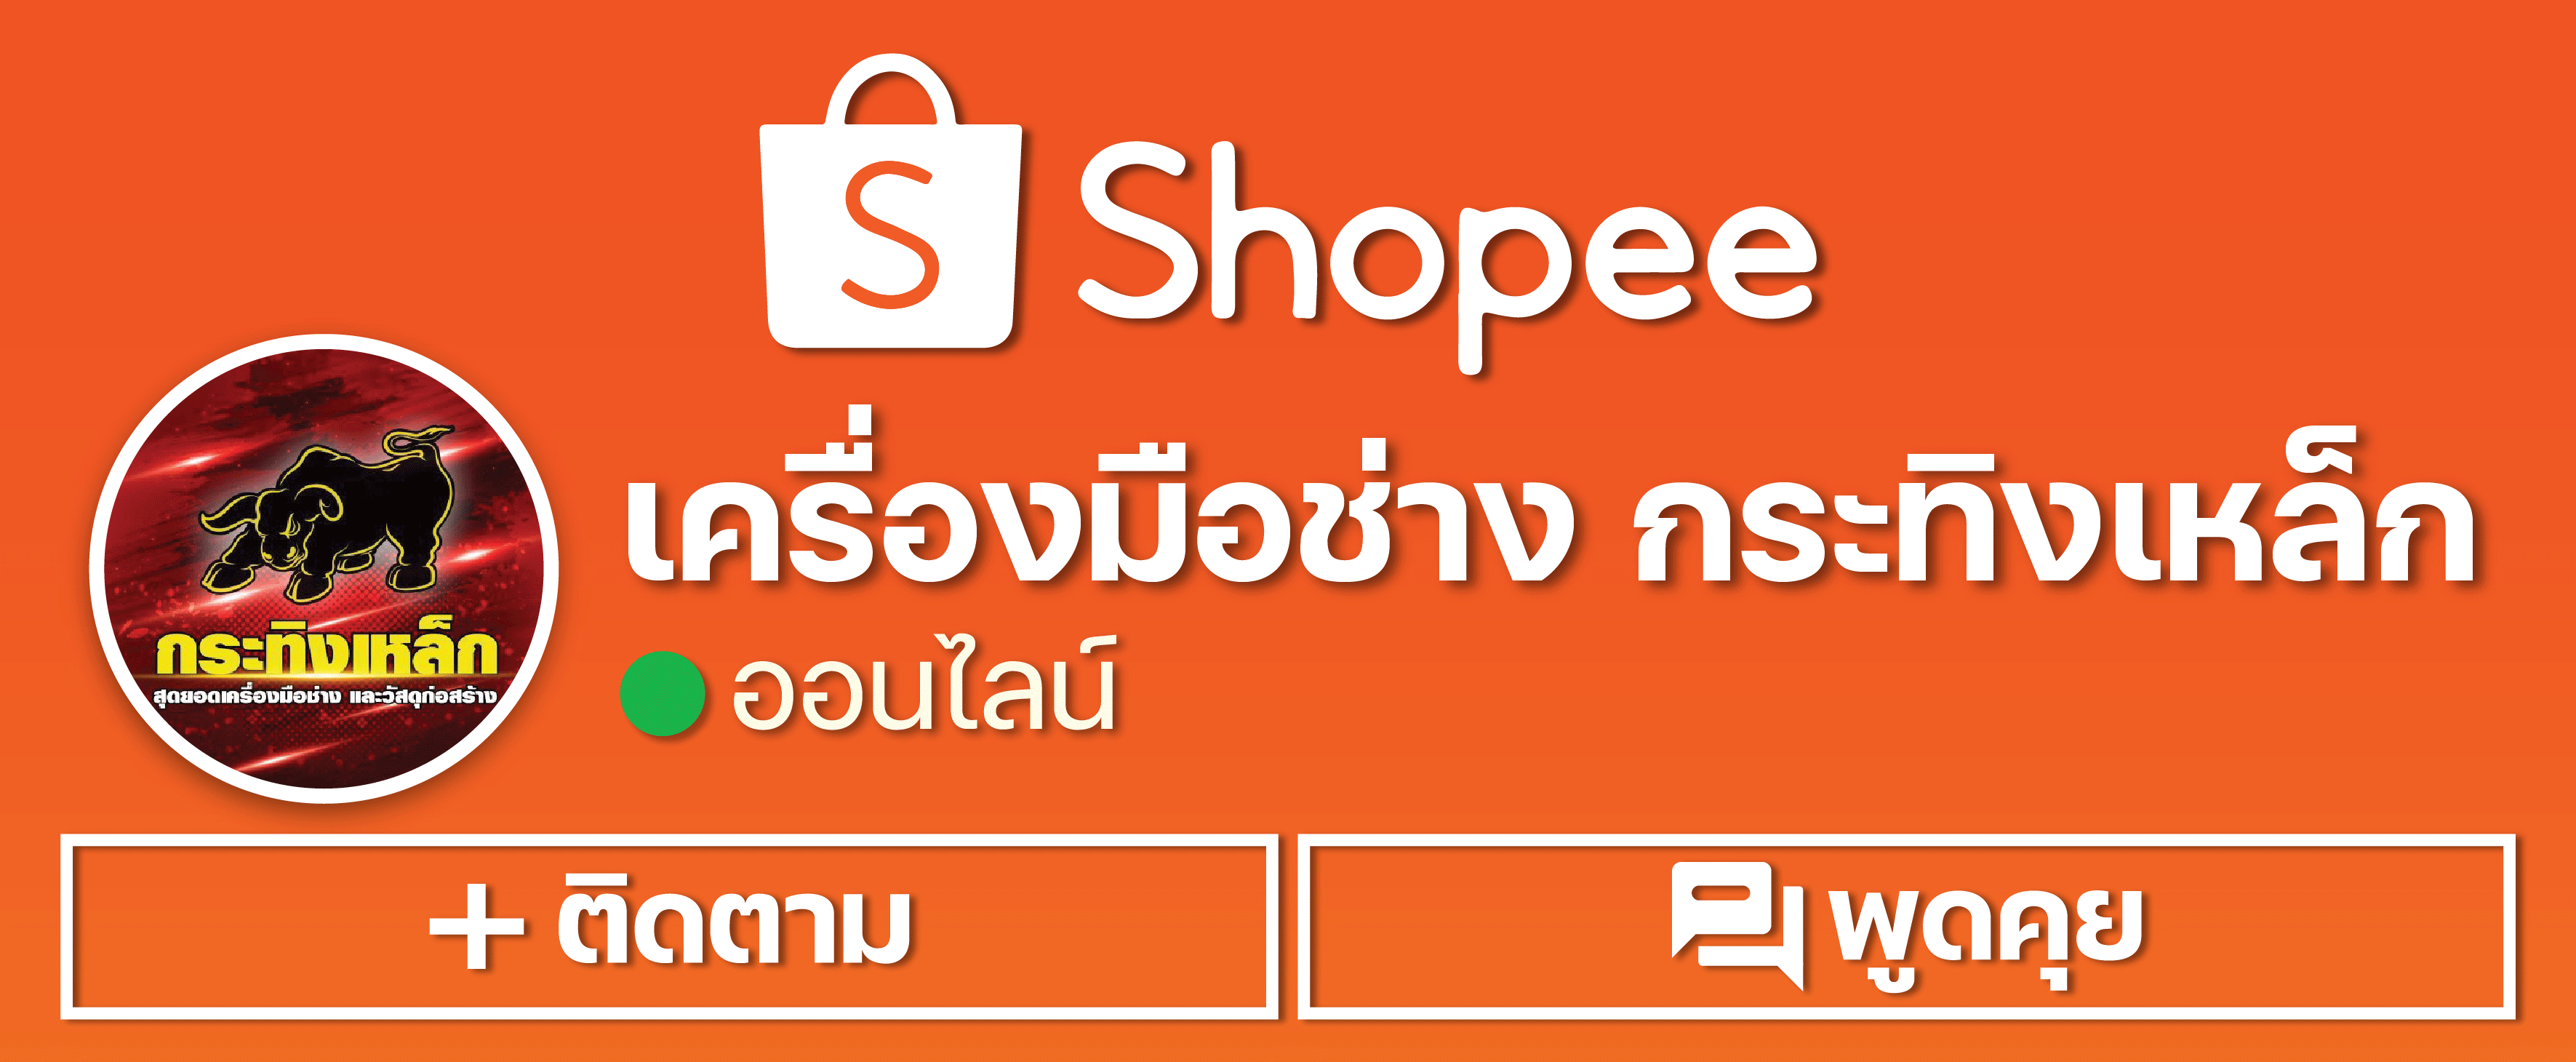 shoppee